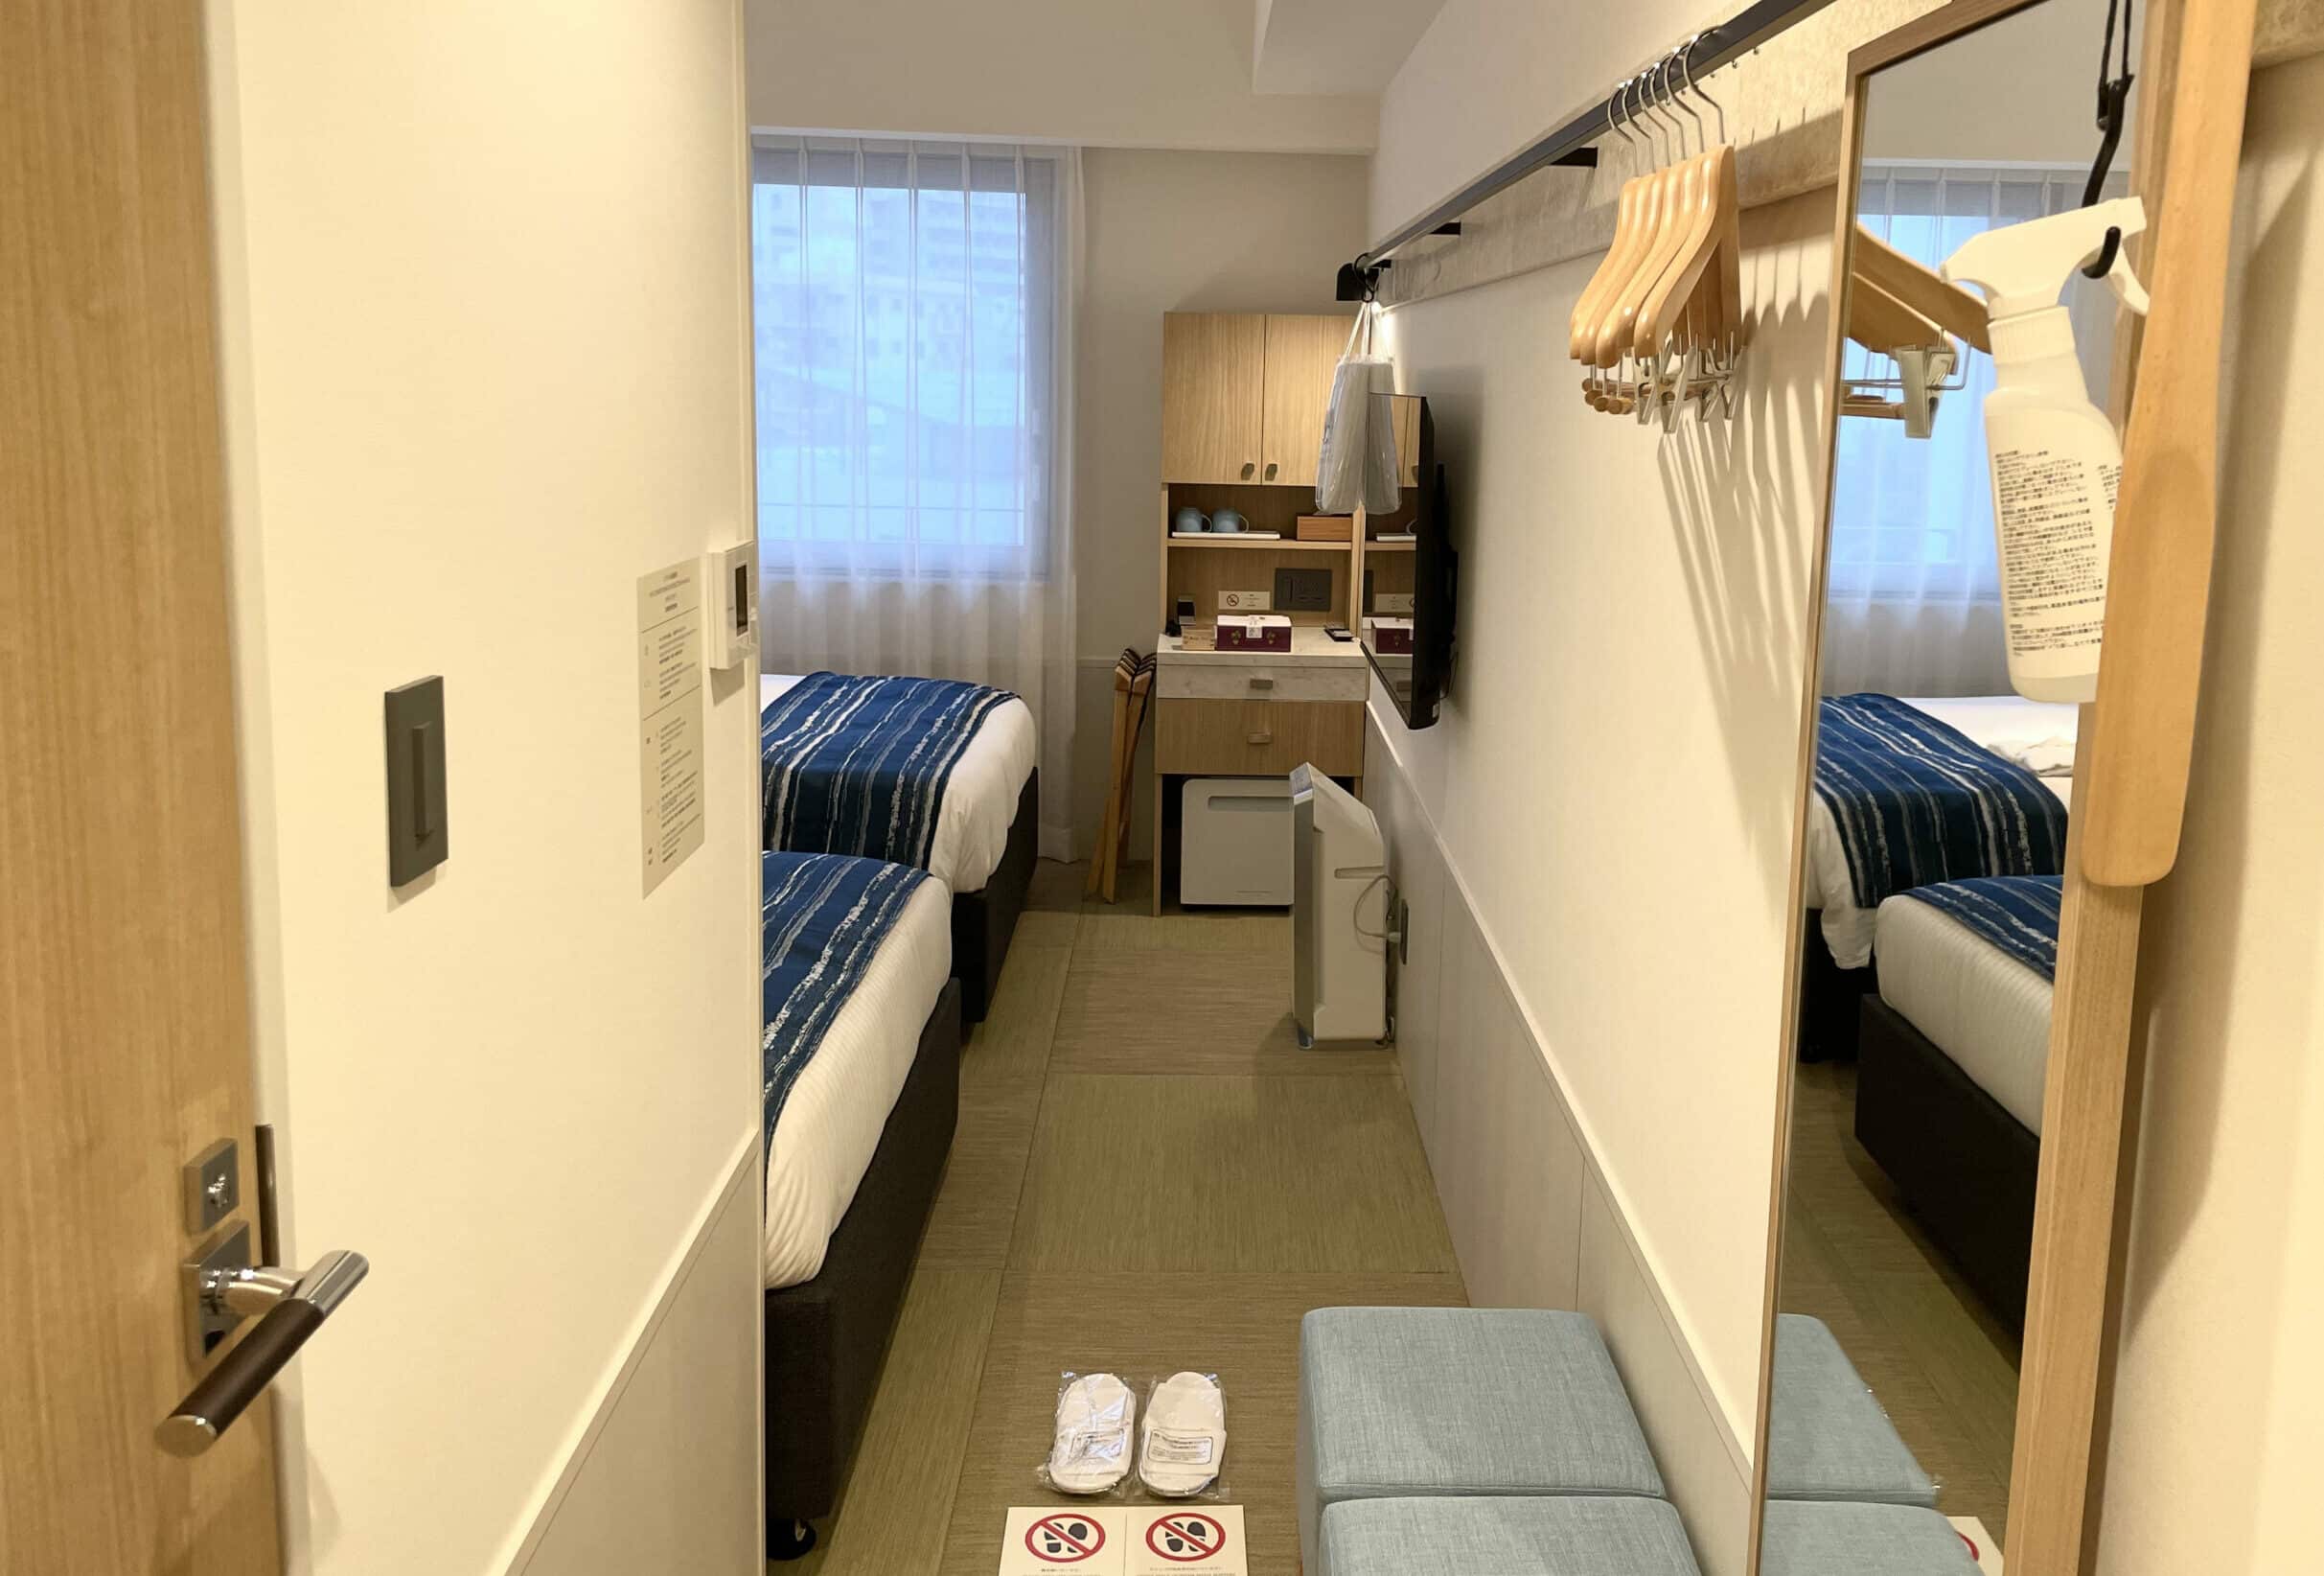 沖繩逸之彩深層溫泉酒店Okinawa Hinode Resort & Hot Spring Hotel Room 房間